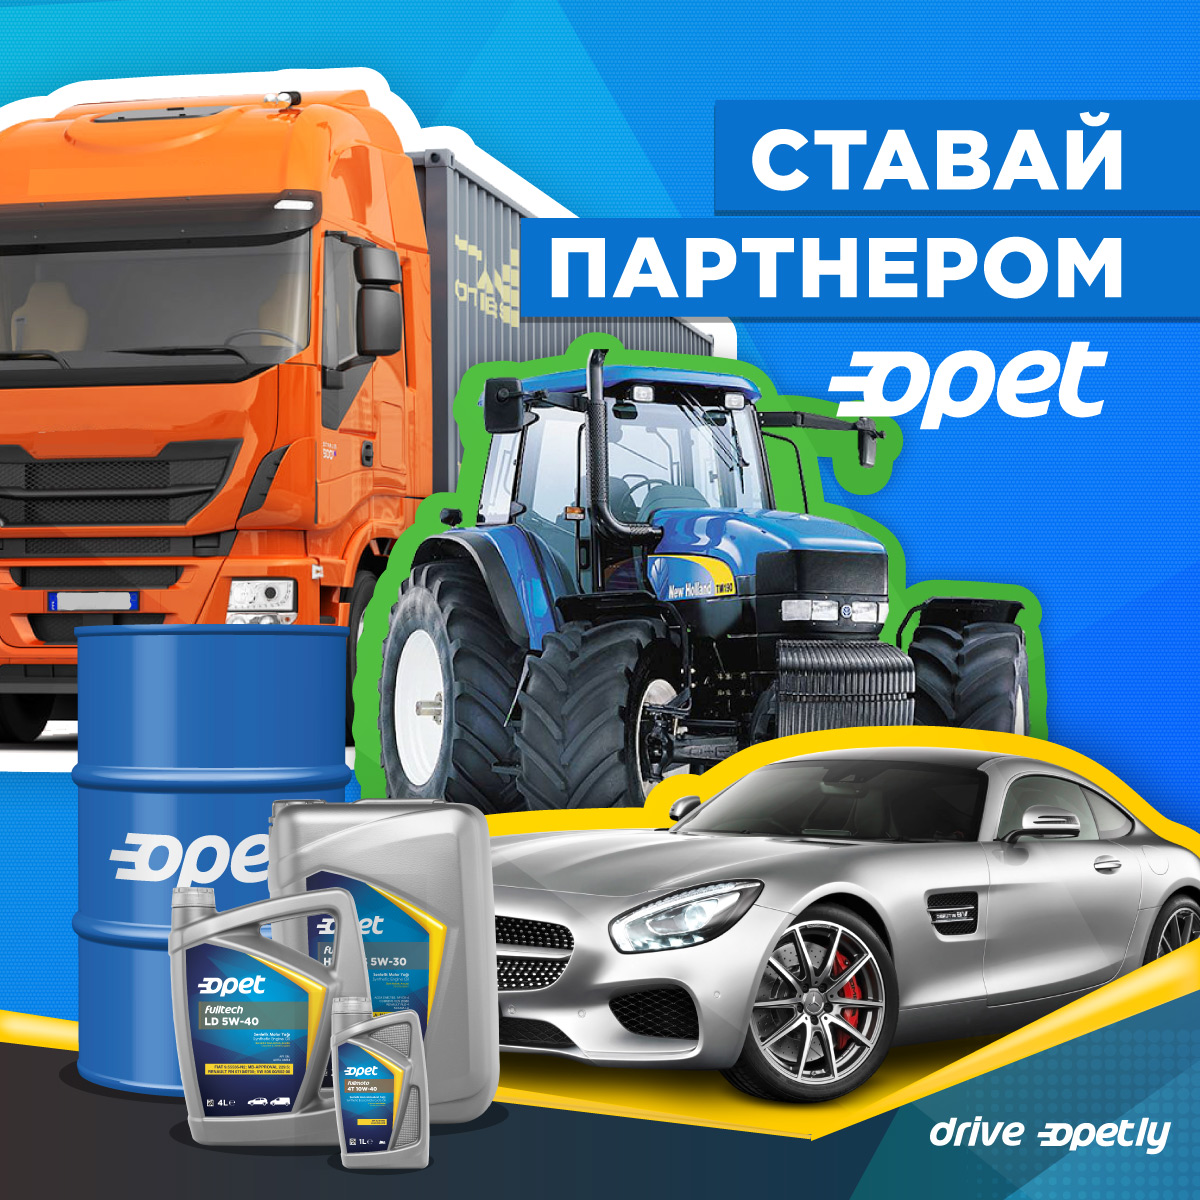 Ставай партнером Opet в Україні.